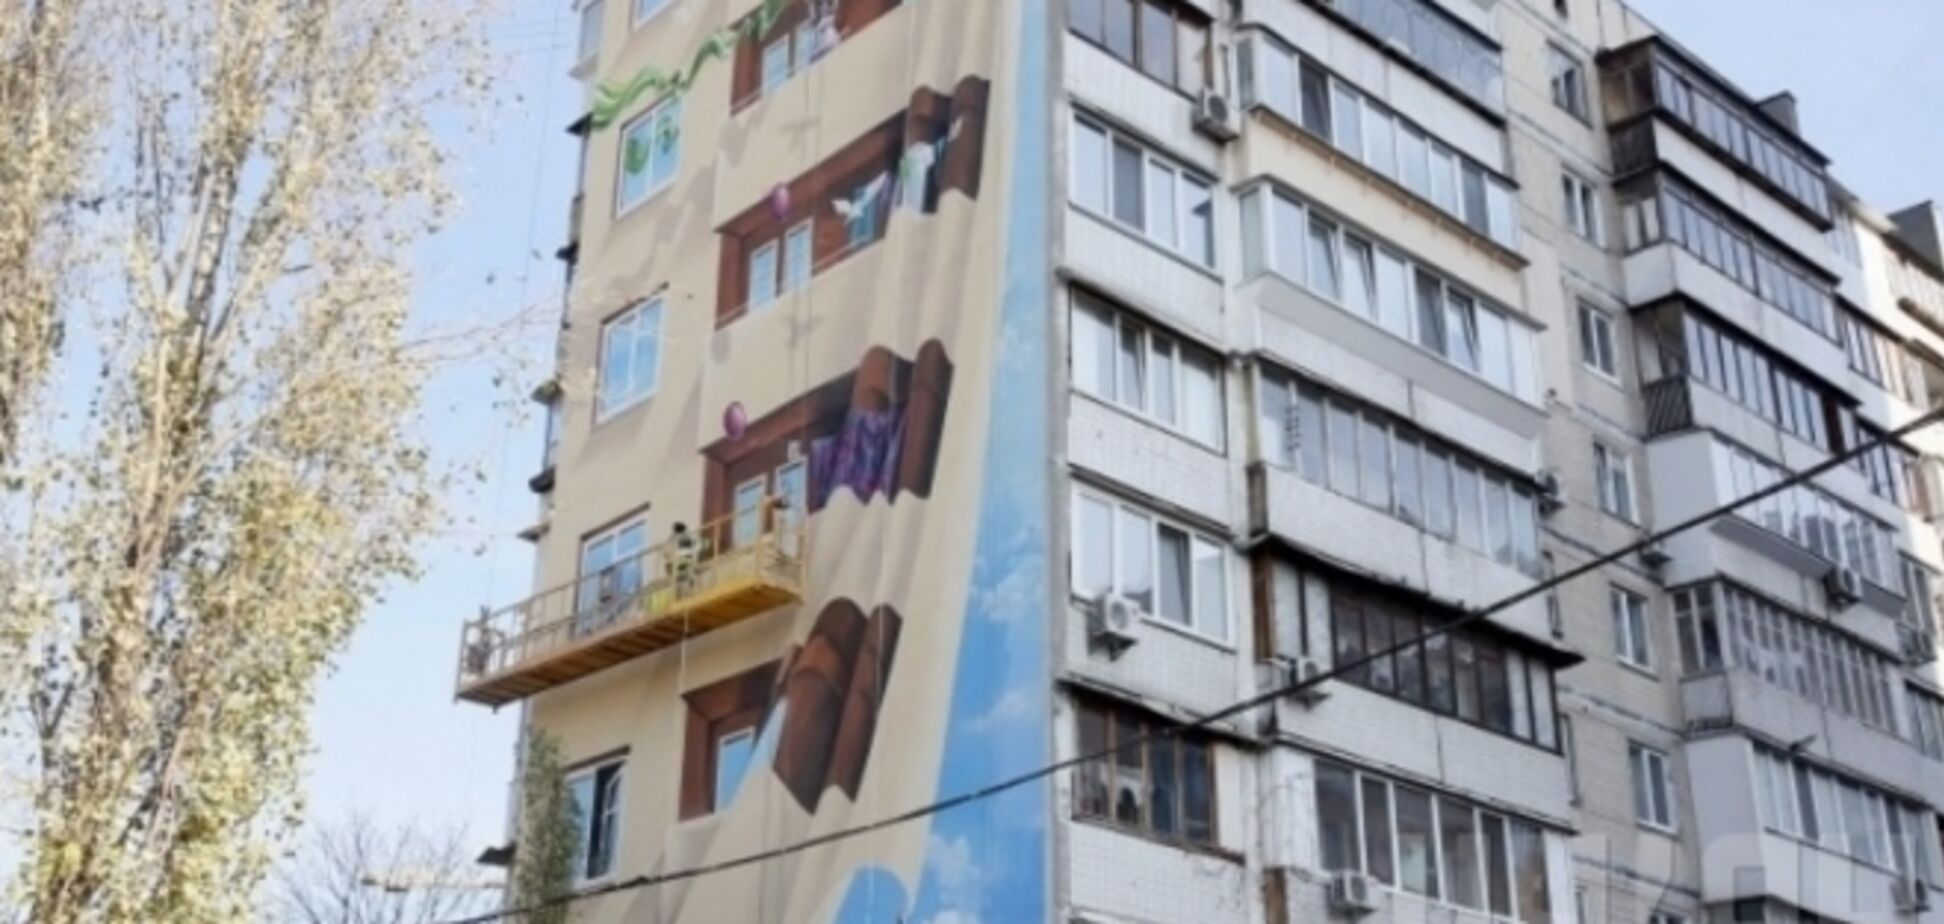 Патриотичное граффити на Оболонской высотке стало самым большим 3D-рисунком в Украине 